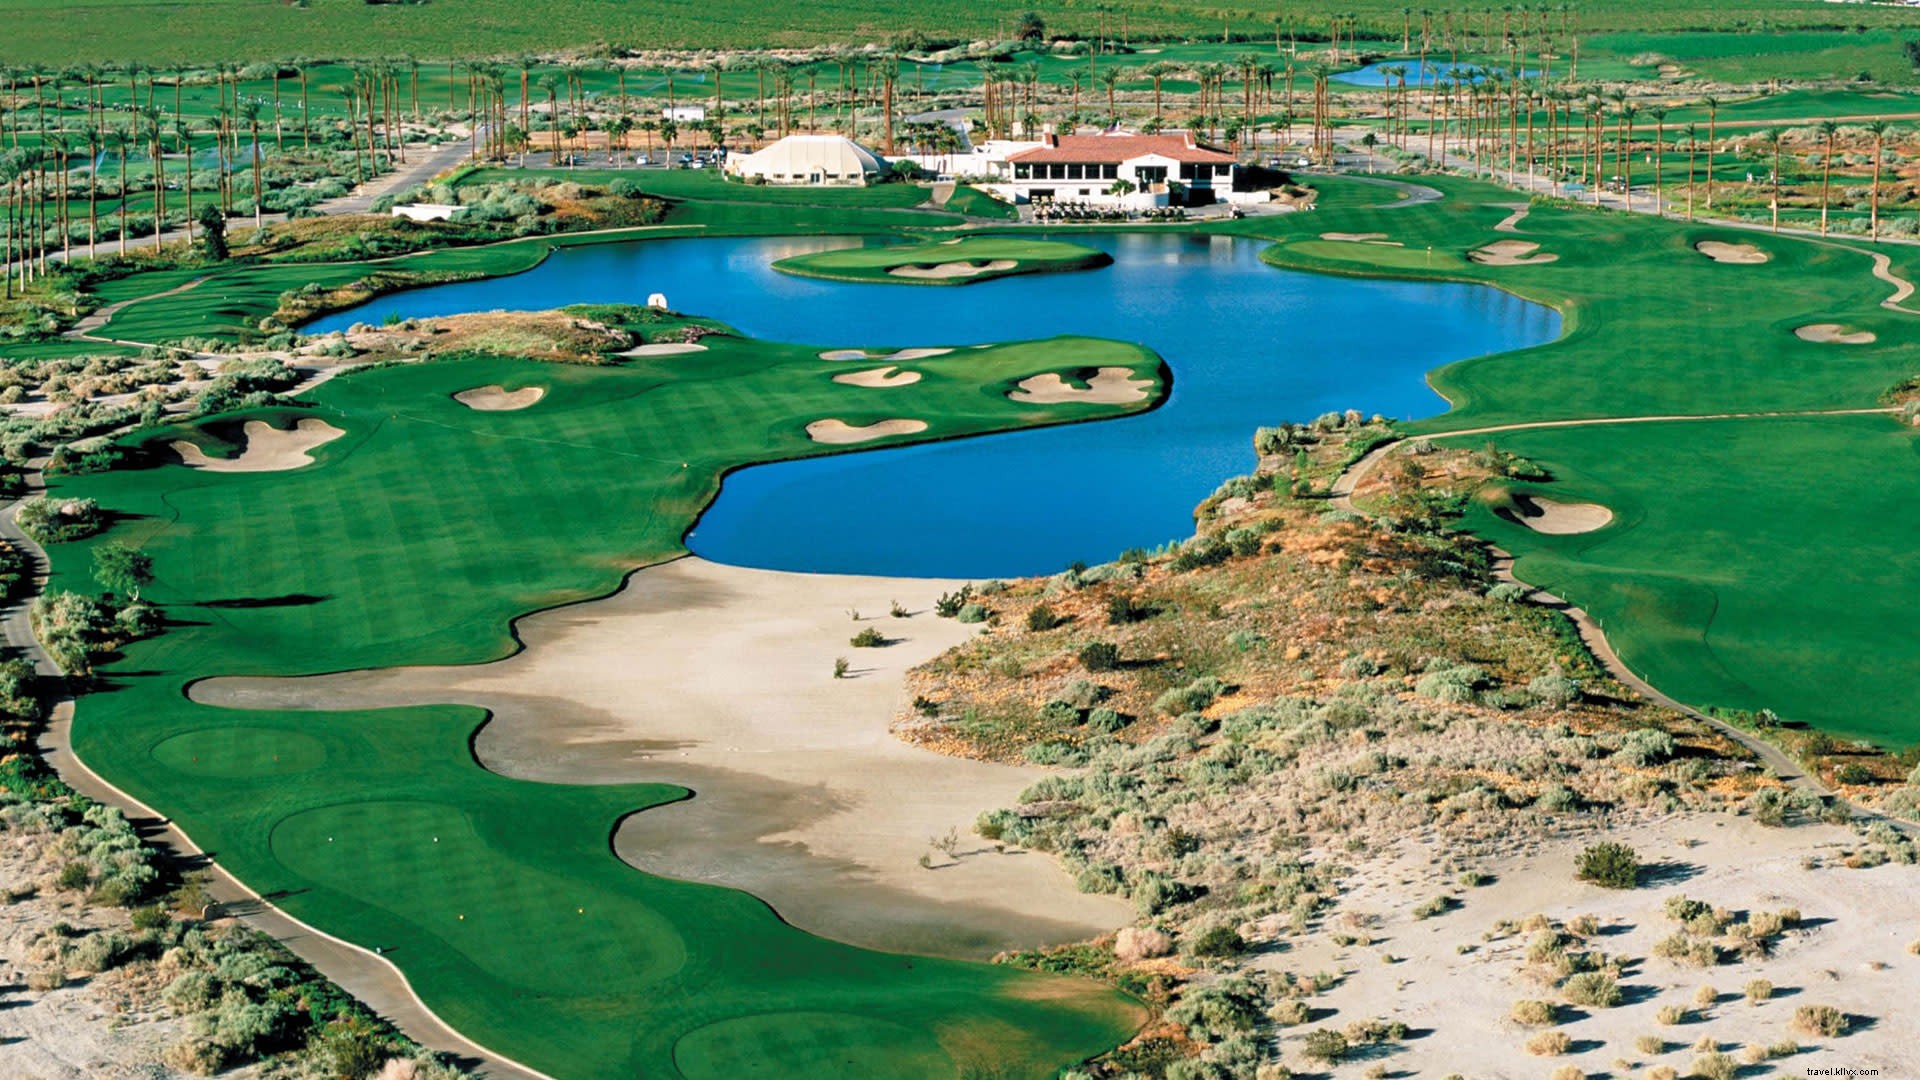 Berdasarkan Desain:Lapangan Golf Greater Palm Springs oleh Arsitek Terkenal 